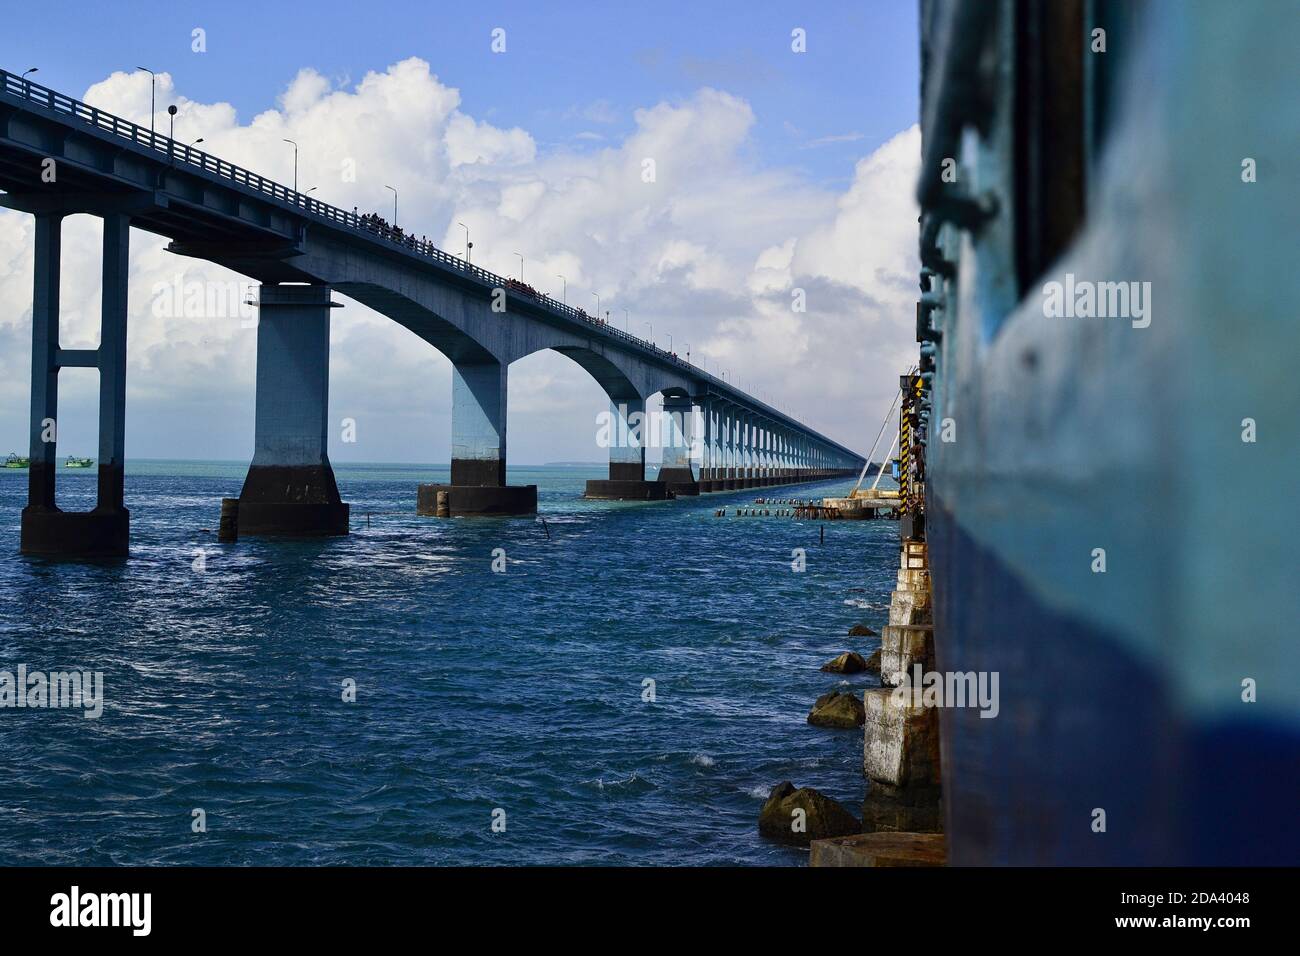 Indische Eisenbahn-Zug auf der Eisenbahnbrücke über das Meer genannt Pamban-Brücke. Es verbindet Rameswaram auf der Insel mit dem Festland. Lange Straßenbrücke Stockfoto